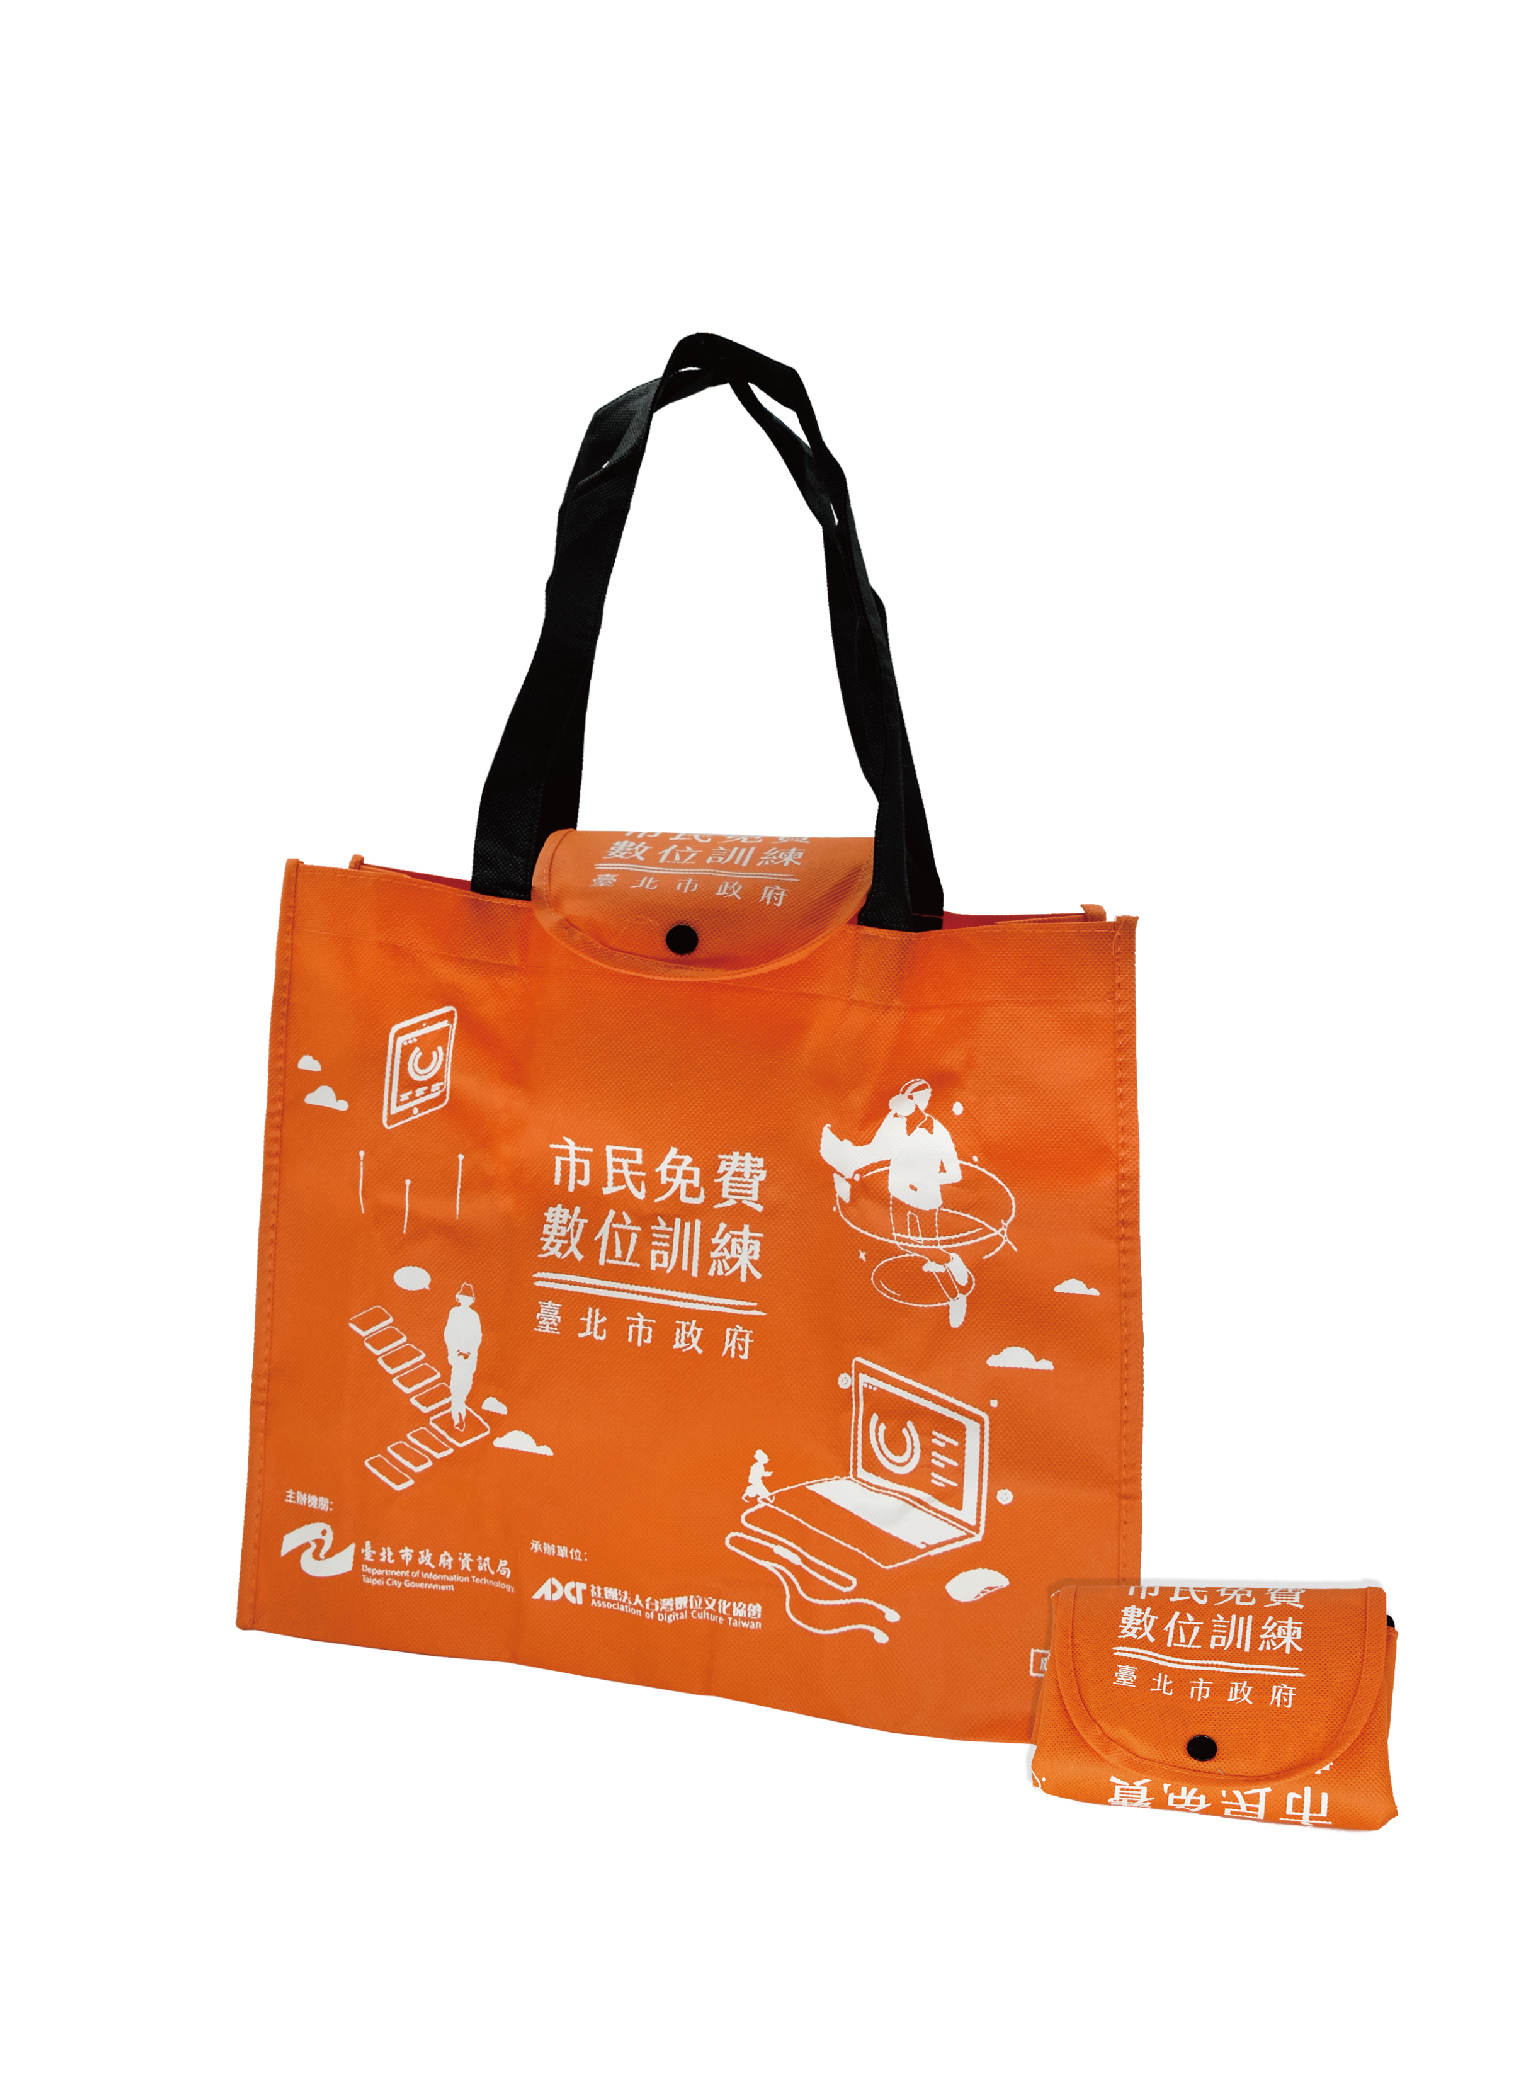 台北市數位訓練立體掀蓋收納袋圖片